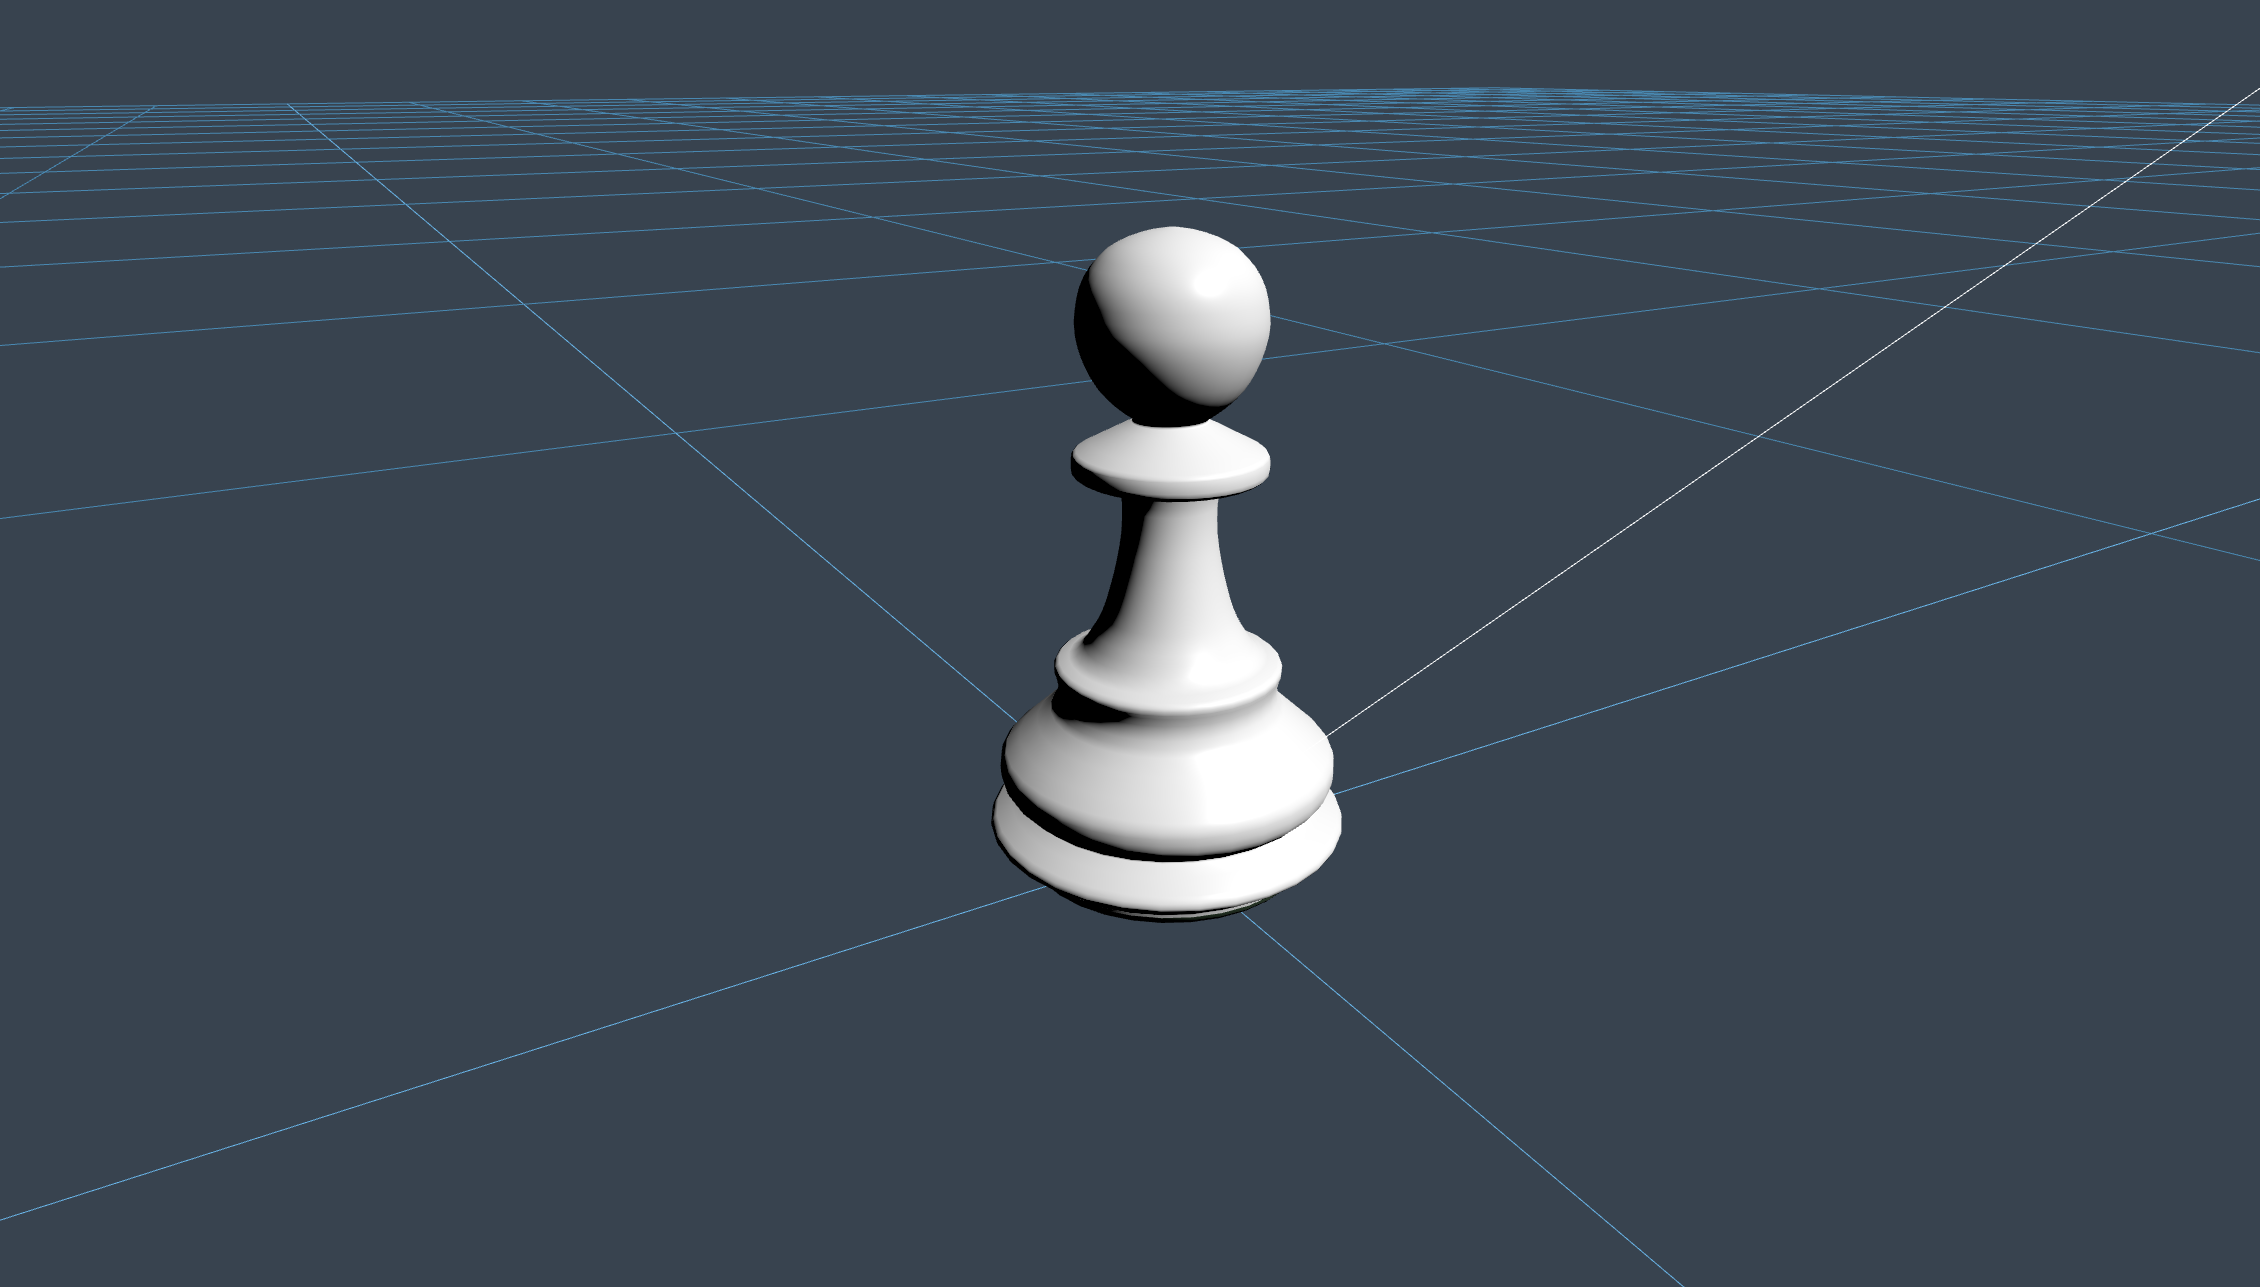 ChessPawn - criado por Niilo Korppi com 3D